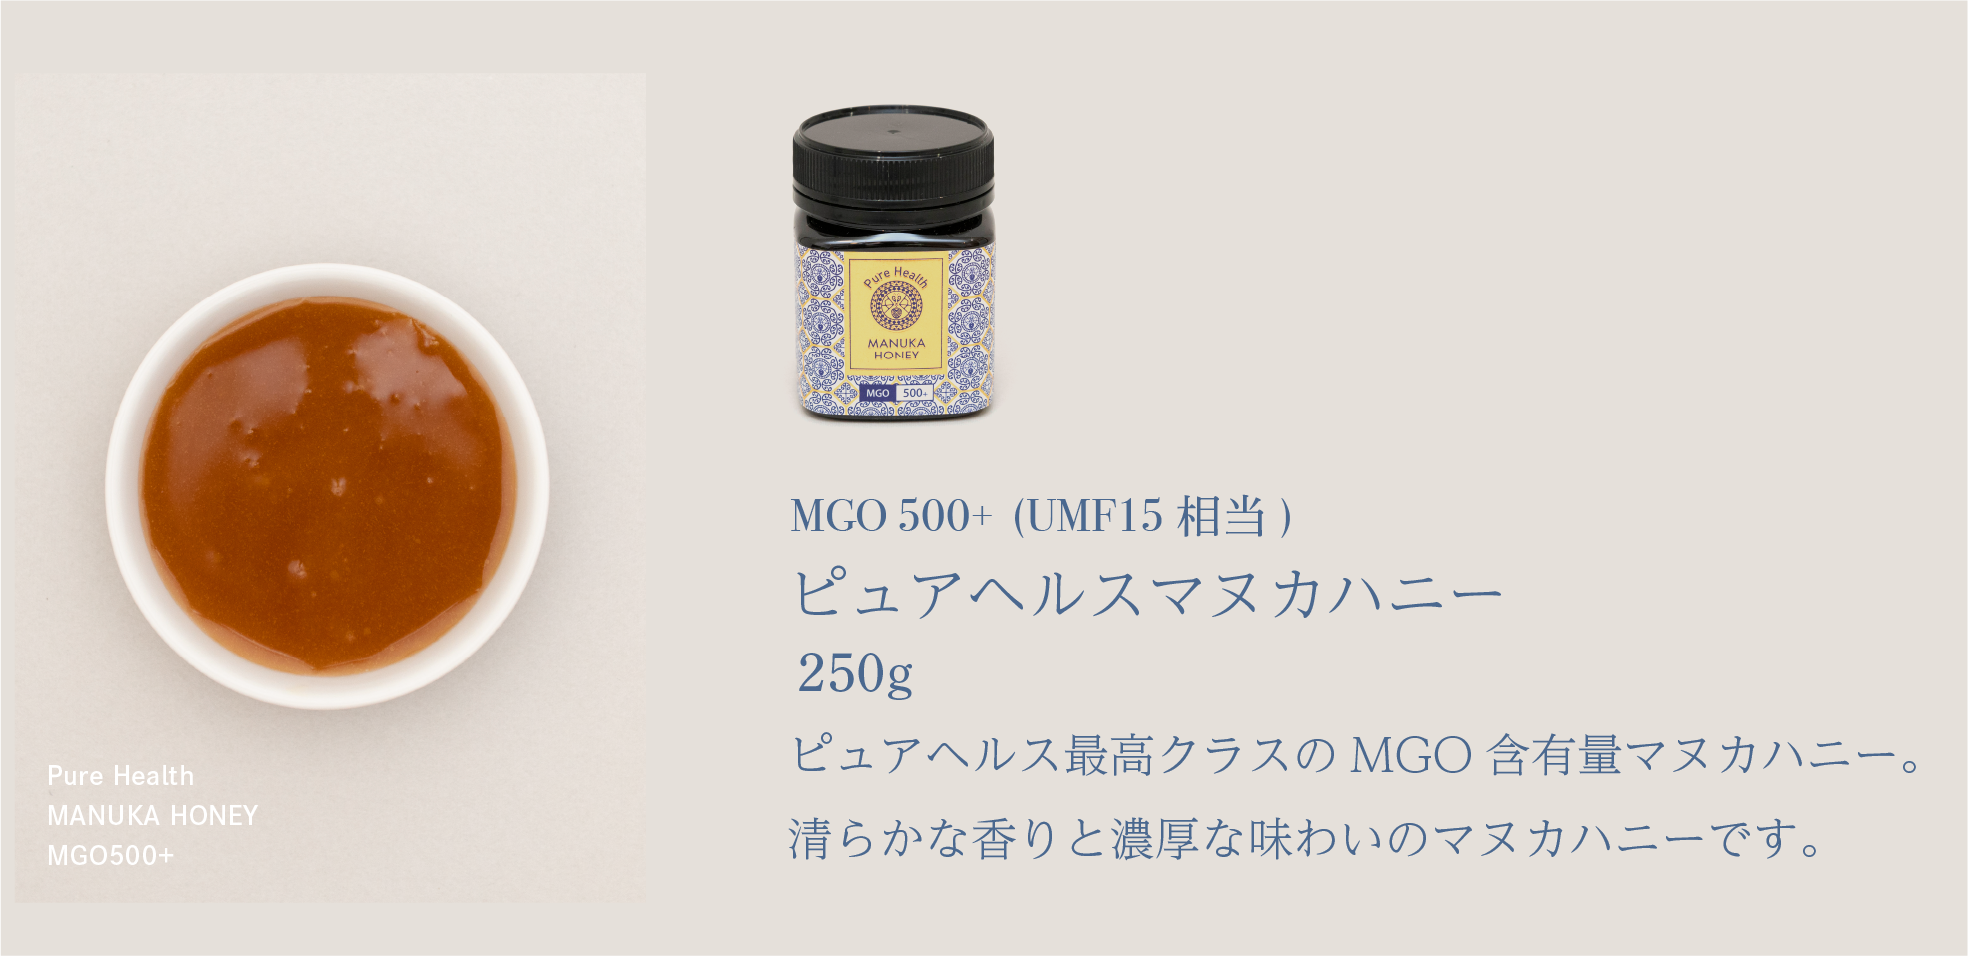 Pure Health MANUKA HONEY MGO500+ MGO 500+ (UMF15 相当) ピュアヘルス最高クラスのMGO含有量マヌカハニー。清らかな香りと濃厚な味わいのマヌカハニーです。